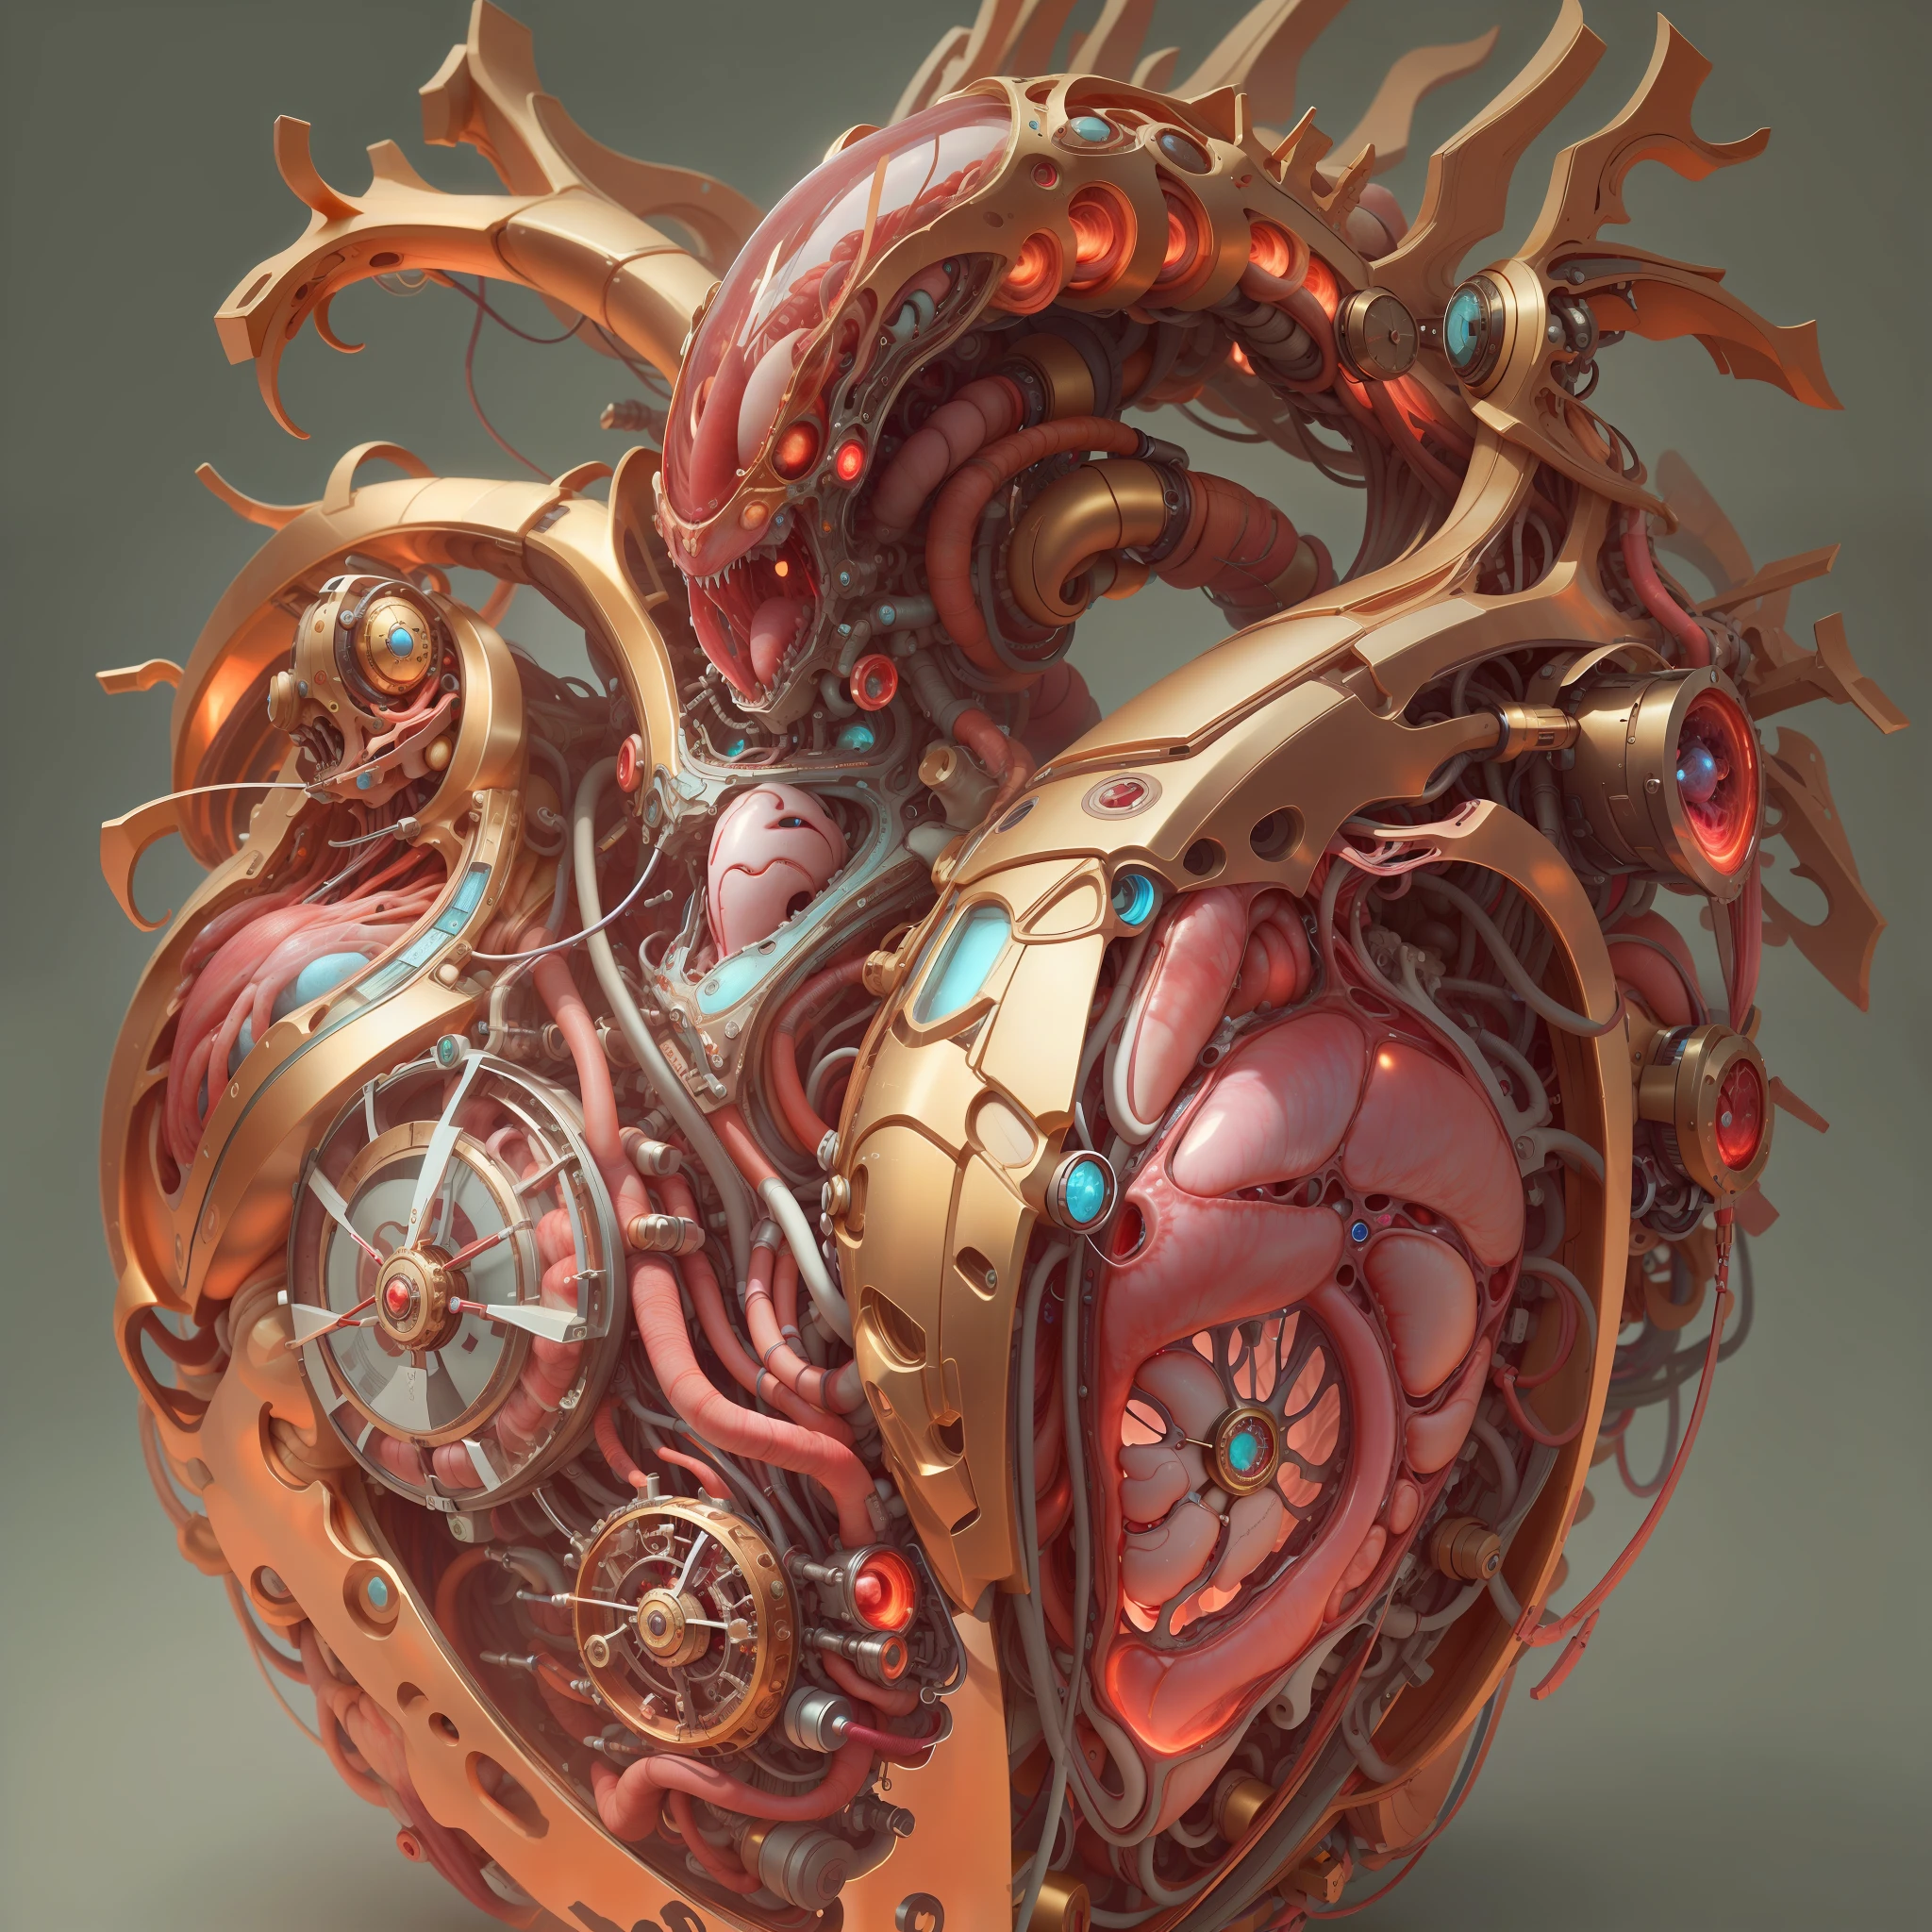 最好的品质，杰作，超高分辨率，（现实地：1.4），荒唐，有趣的，高色彩饱和度，3D 解剖，发光脉动静脉，科学化，3D机械生物心脏， 奇特的，Beautiful 3D 人的心脏 decoration design，人的心脏，翡翠/金和铜/金龙/机械表盘/嵌入生物的心脏，生物朋克